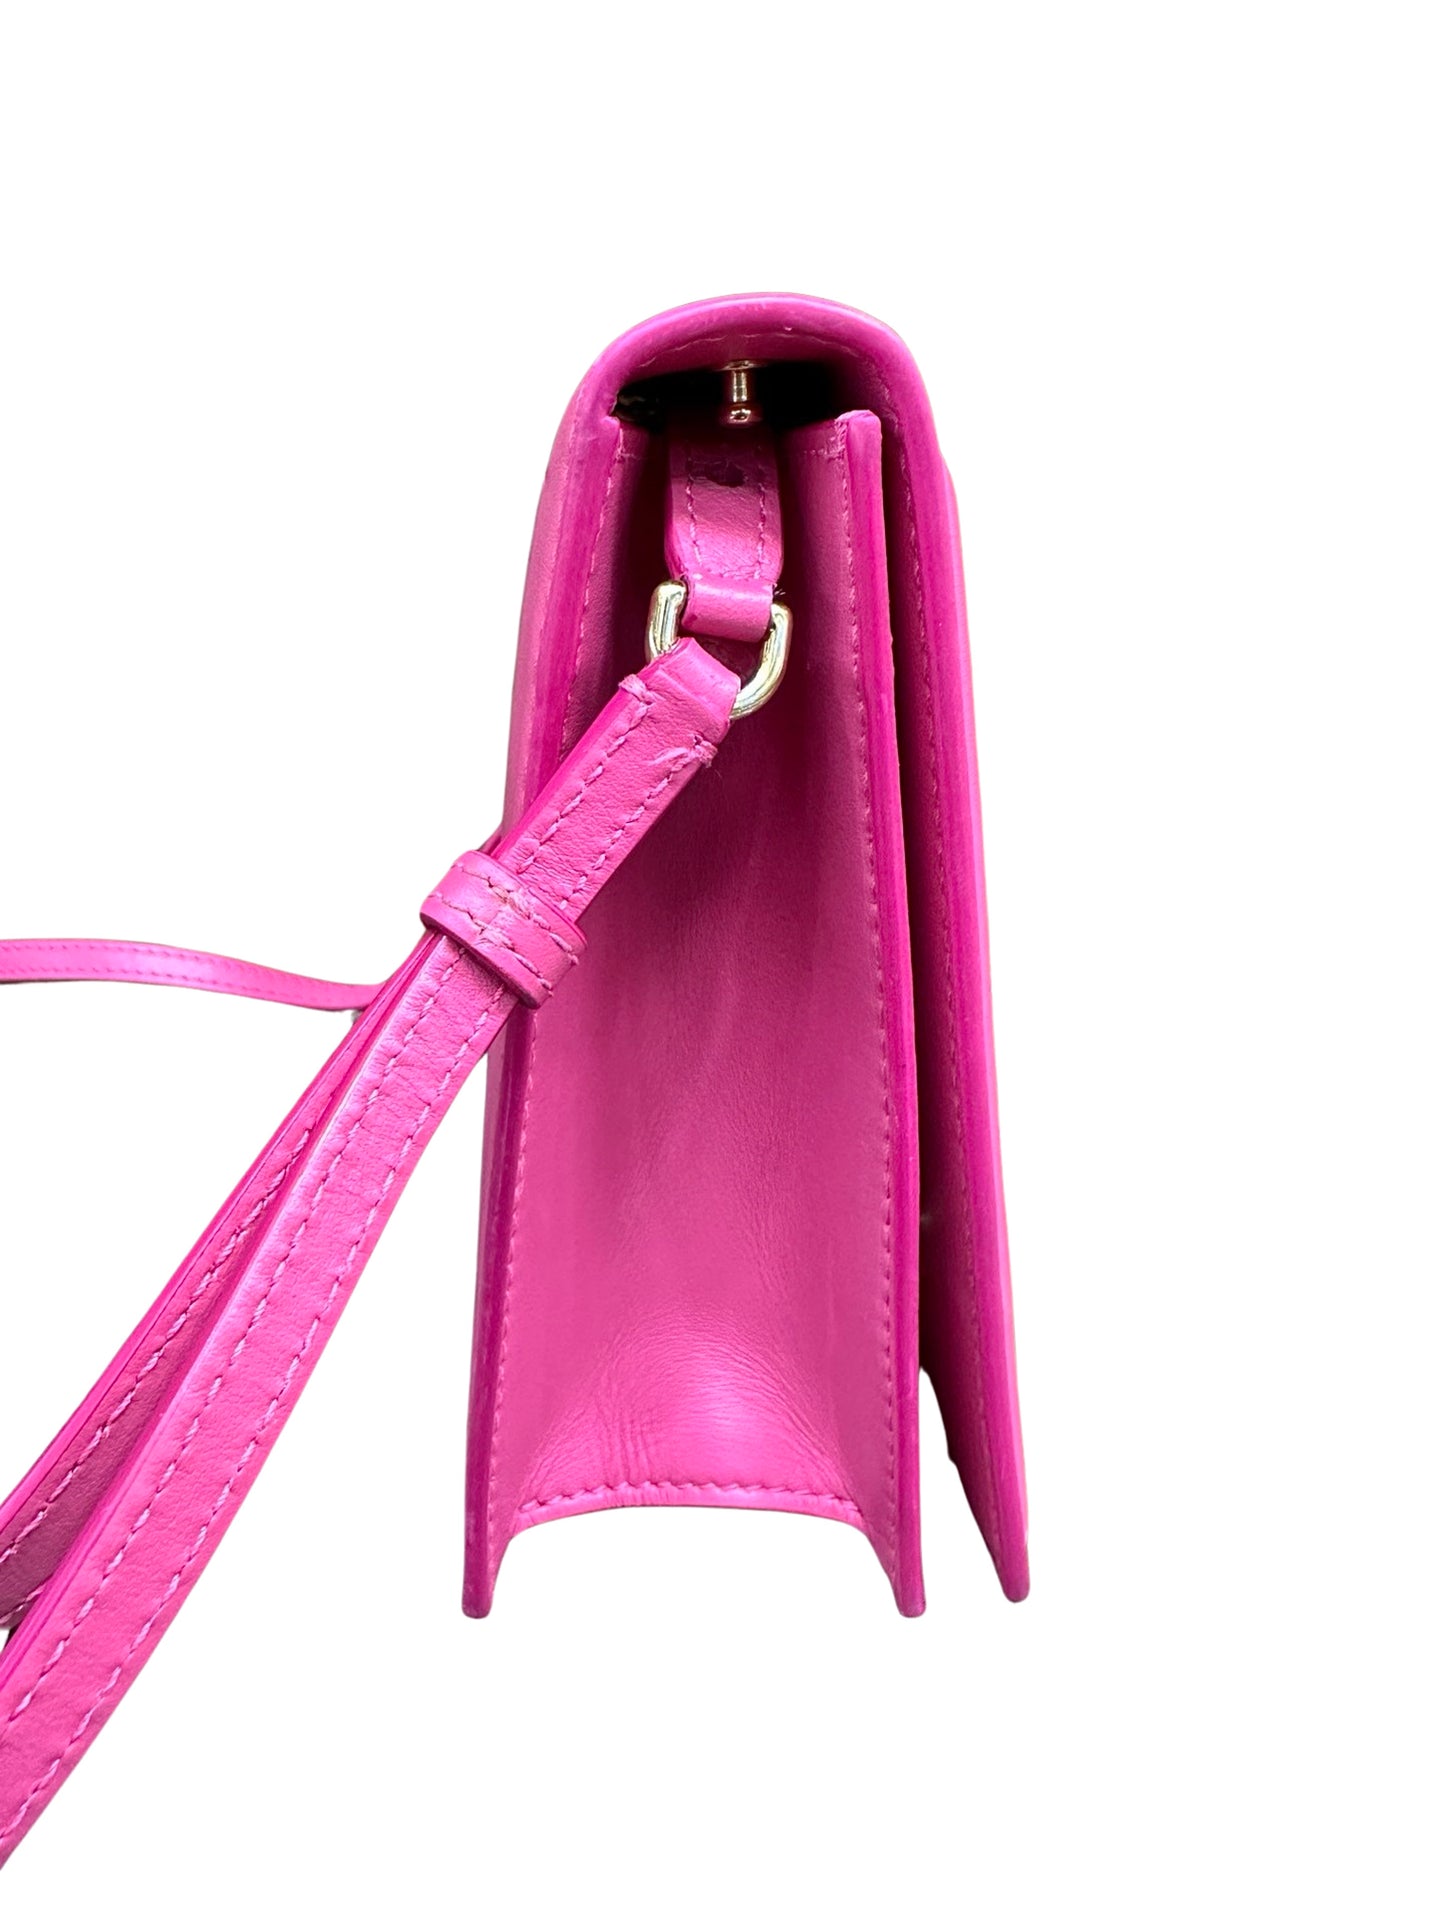 Side of pink bag